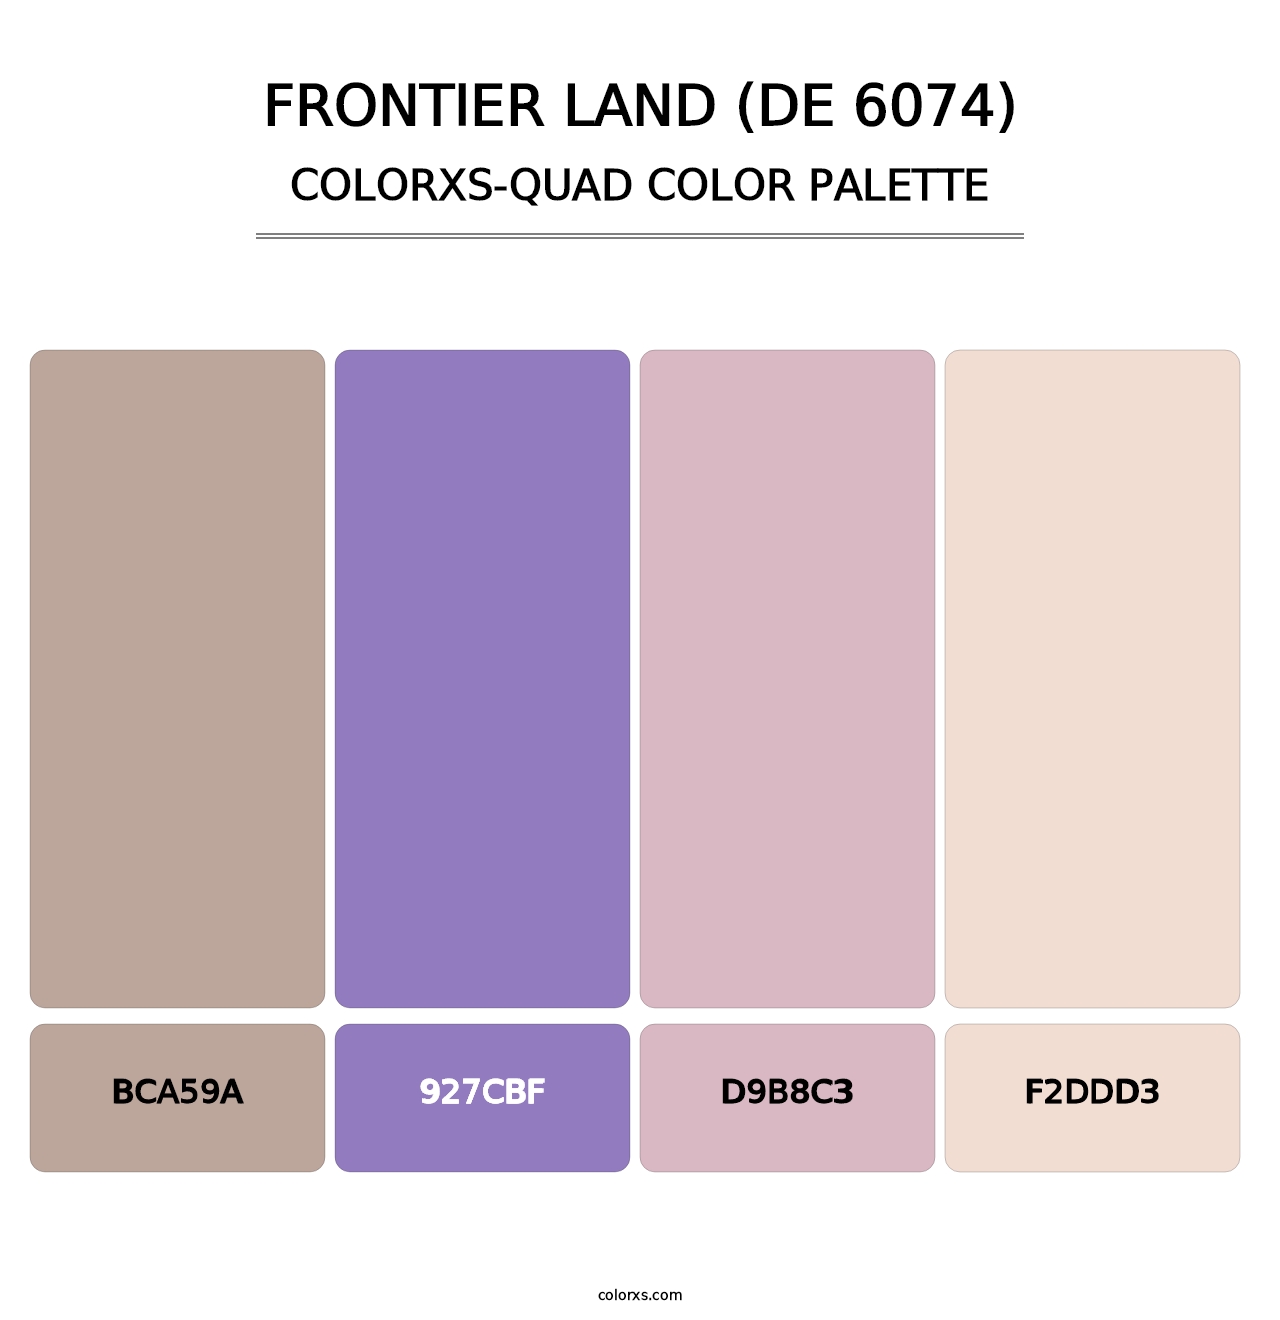 Frontier Land (DE 6074) - Colorxs Quad Palette